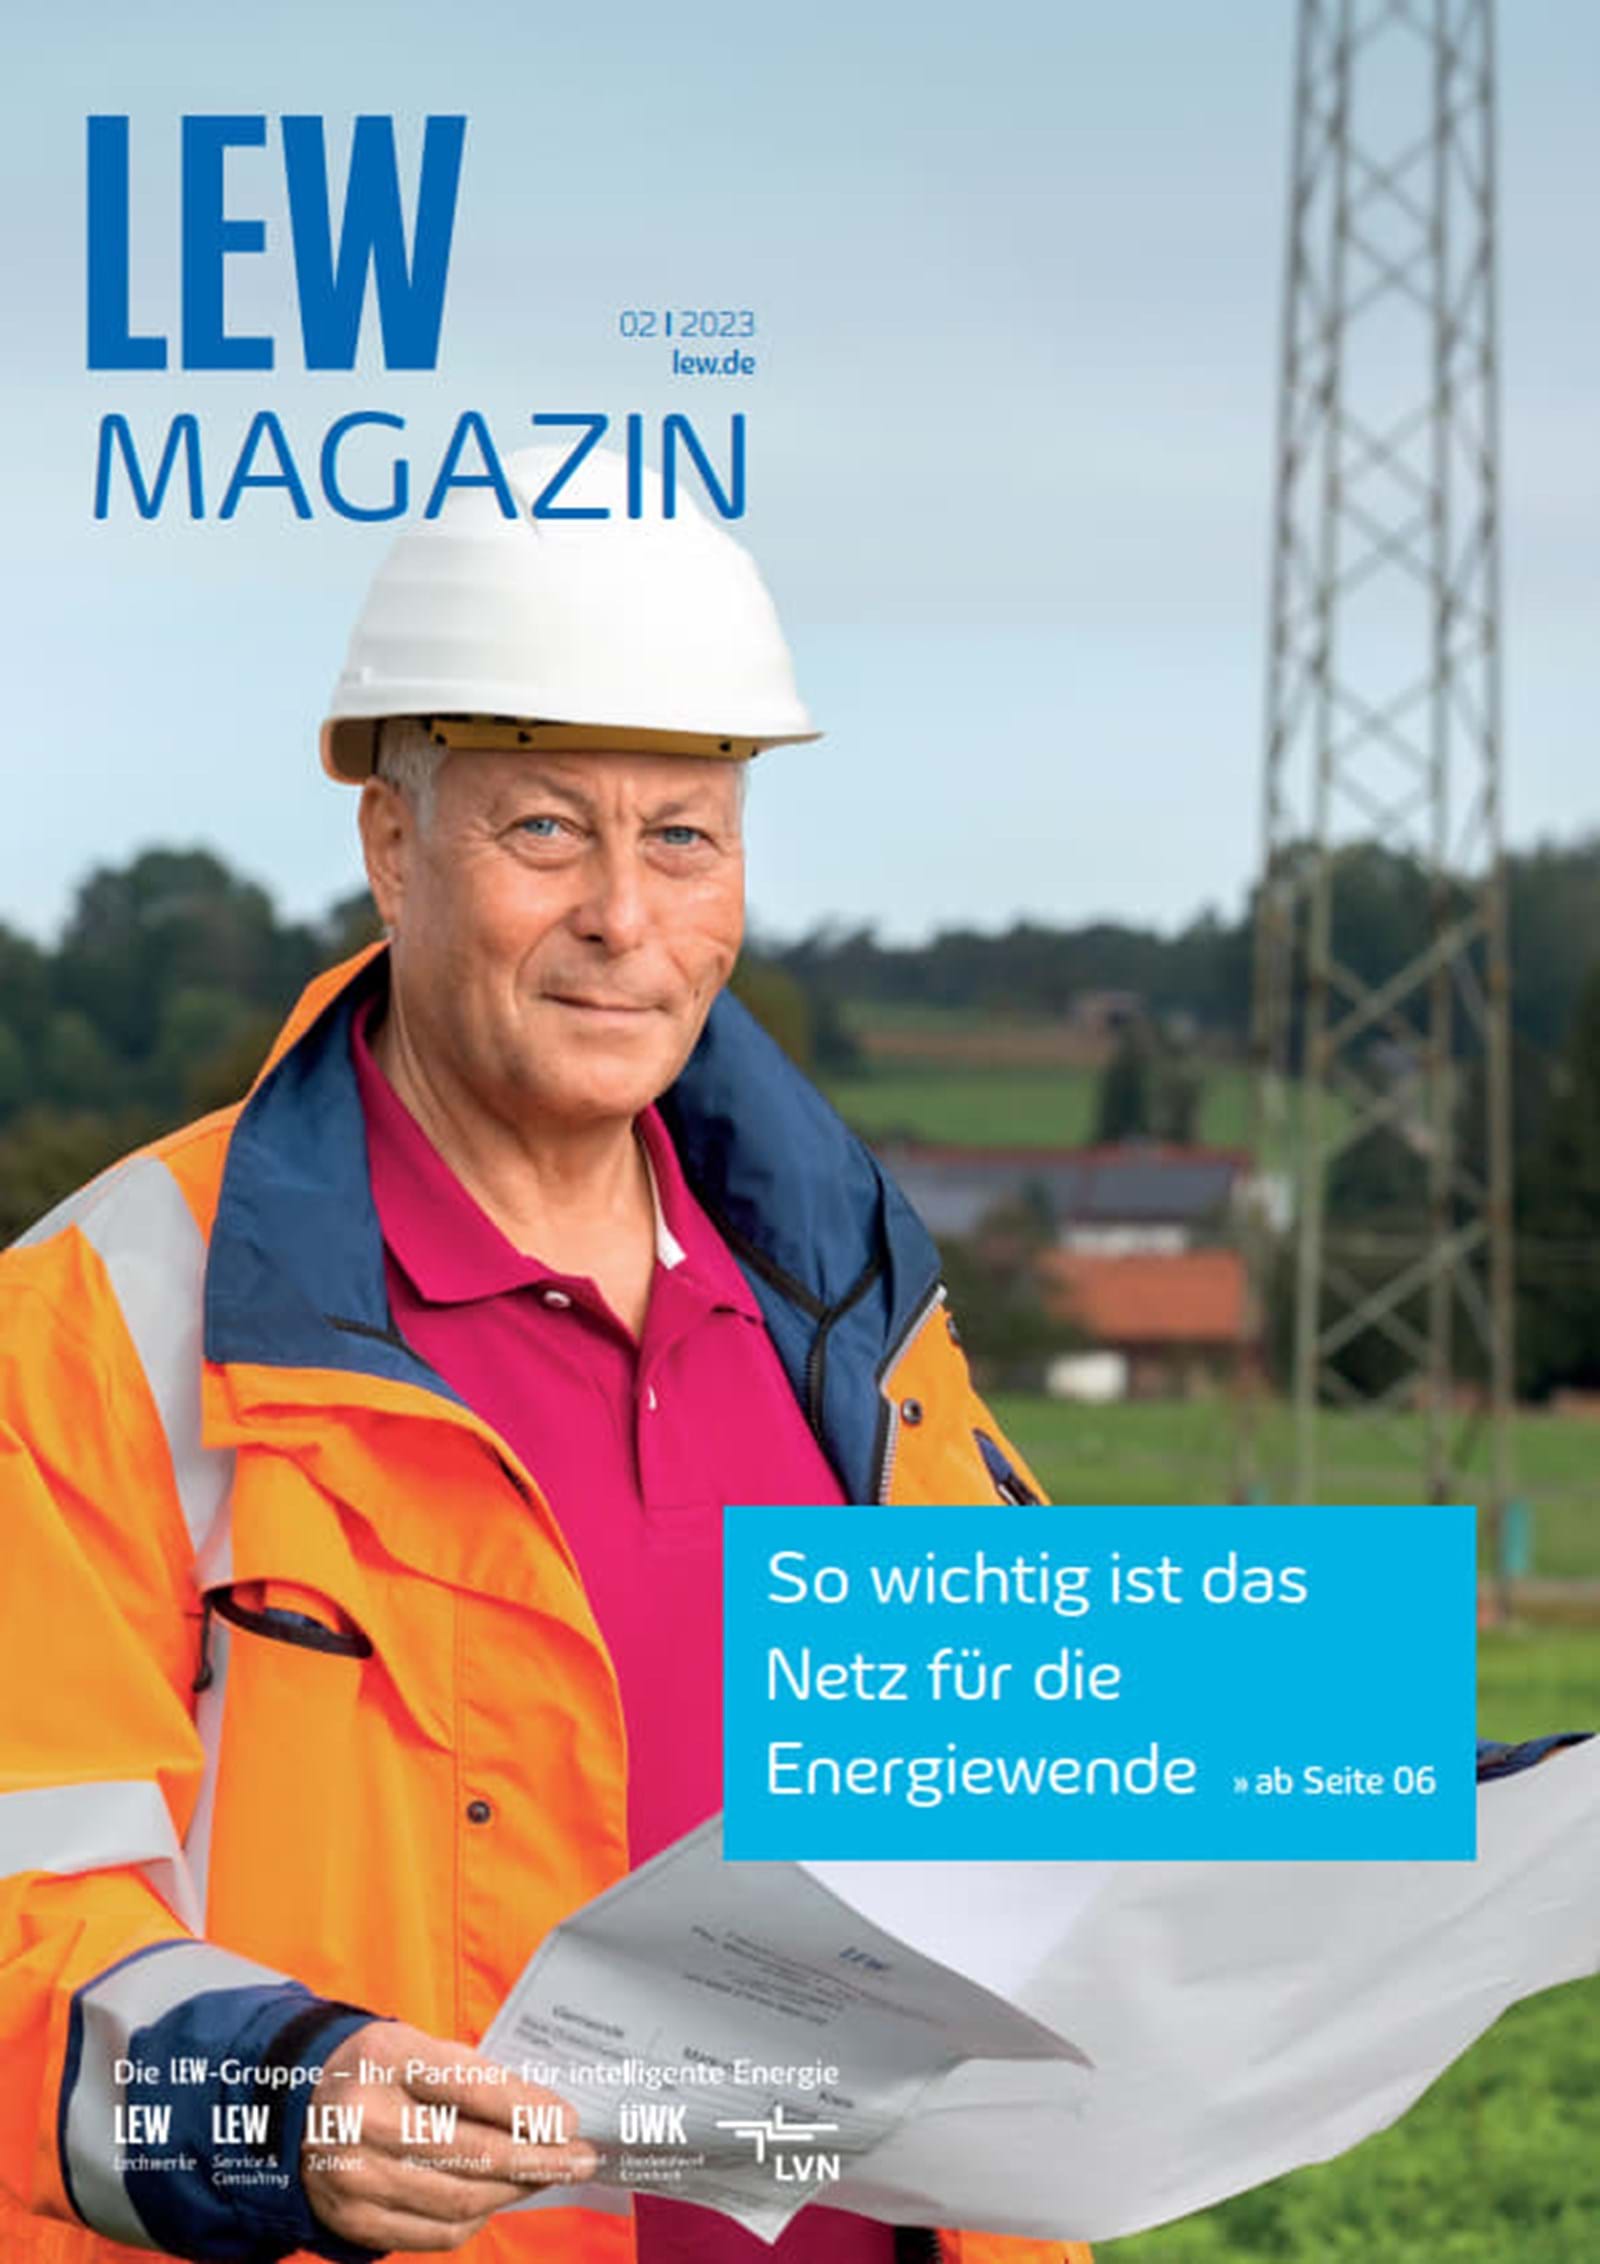 LEW Magazin Cover Ausgabe 02-2023: LVN Mitarbeiter in Sicherheitskleidung mit Bauplan vor einem Strommast